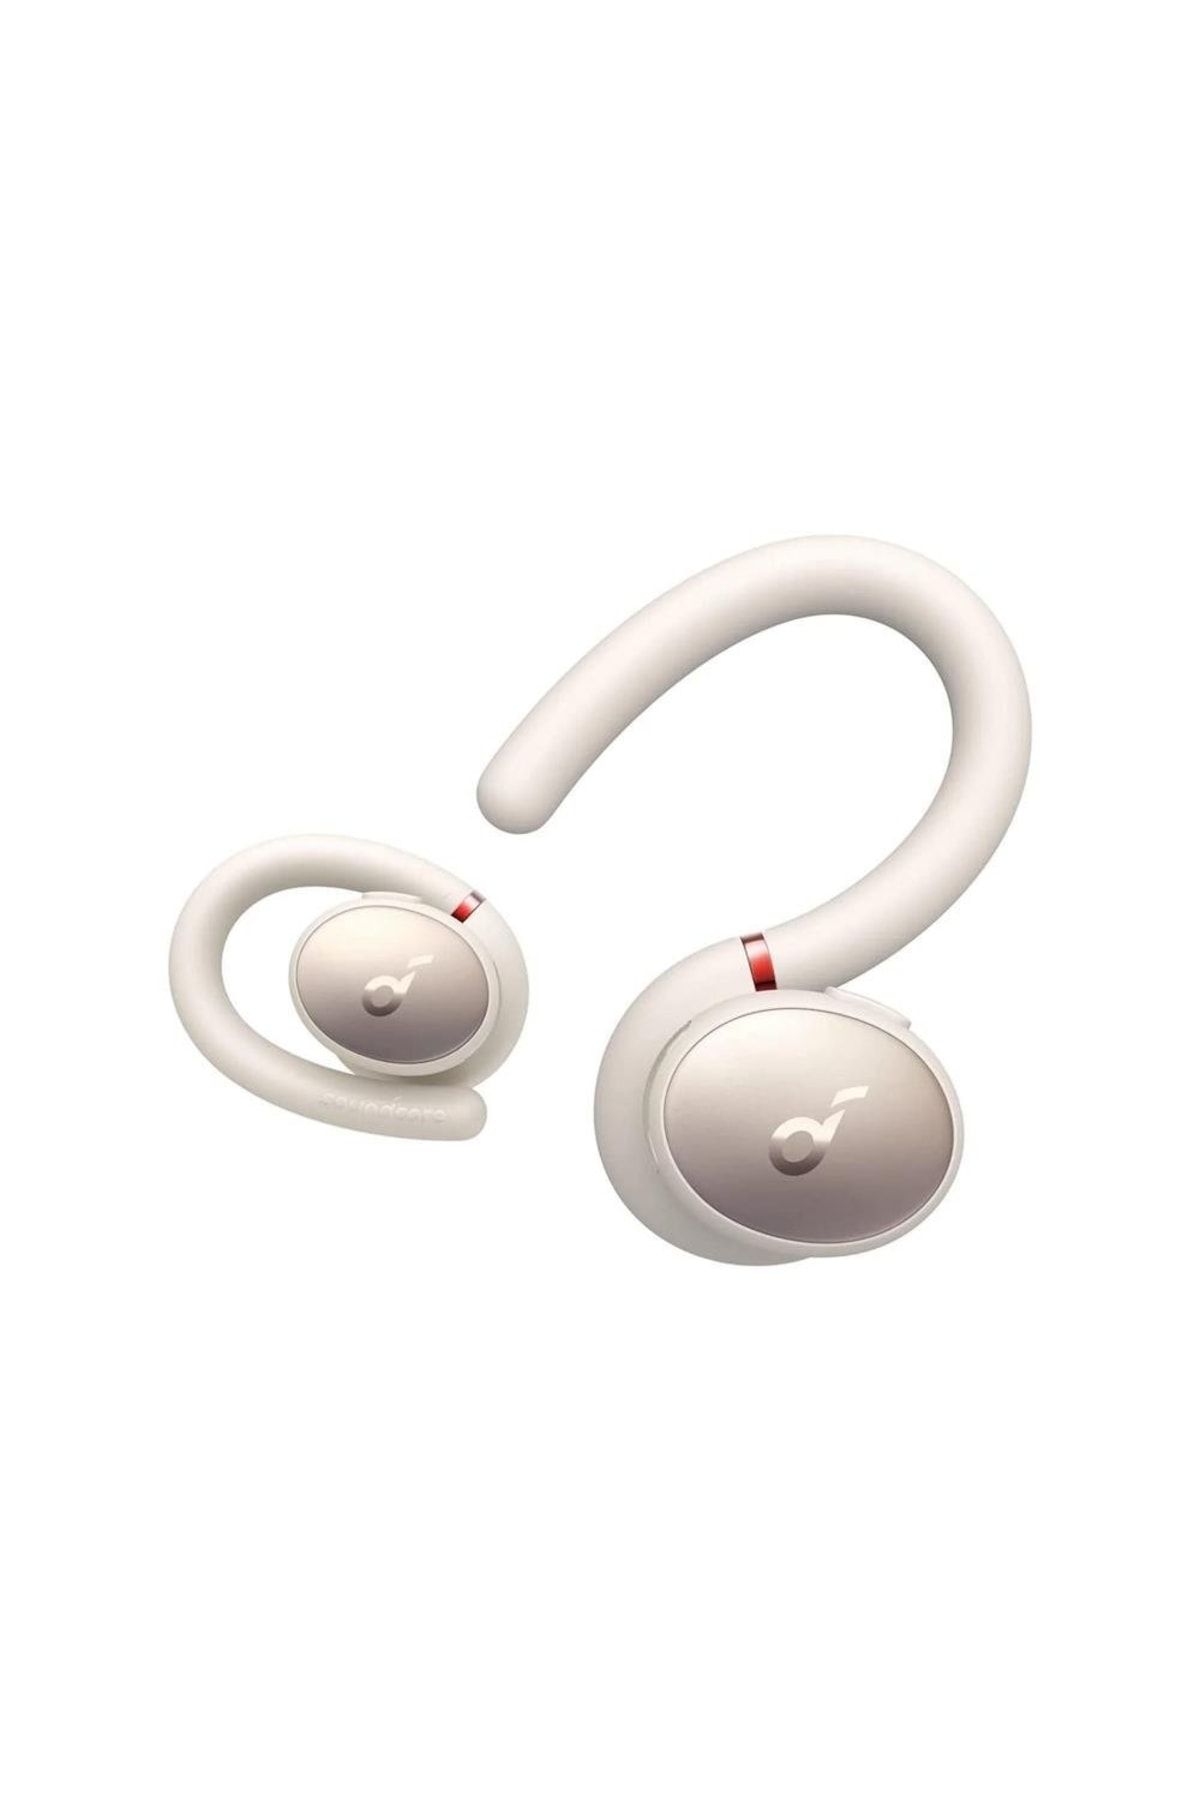 Anker Soundcore Sport X10 Kablosuz Bluetooth Ipx7 Suya Dayanıklı Spor Kulak Içi Kulaklık Beyaz